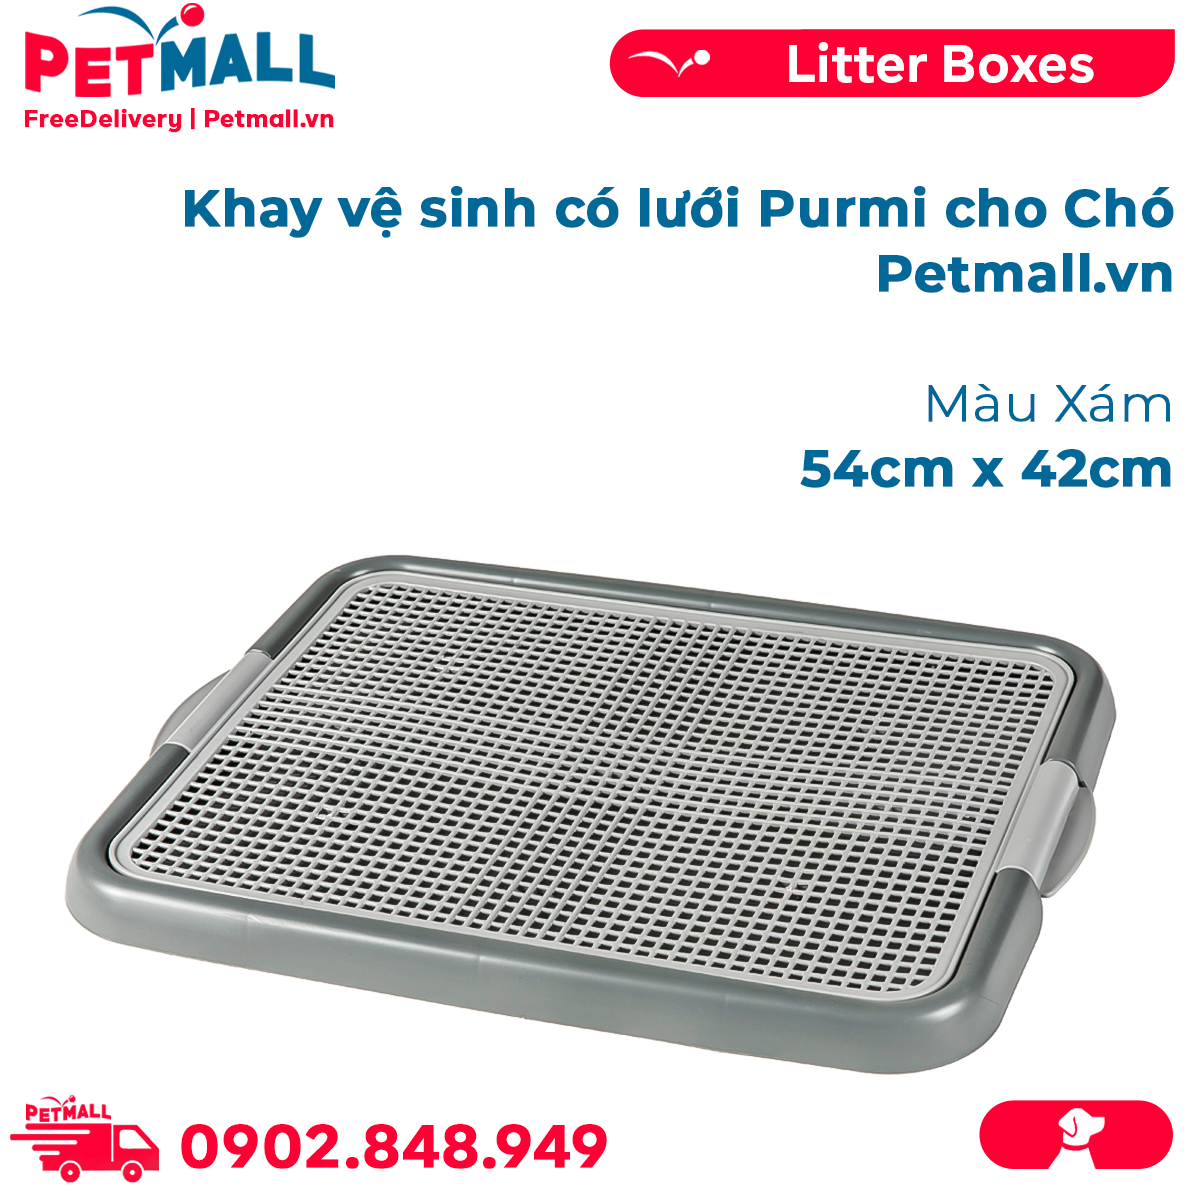 Khay vệ sinh có lưới Purmi cho chó Size 54cm x 42cm - Màu xám Petmall